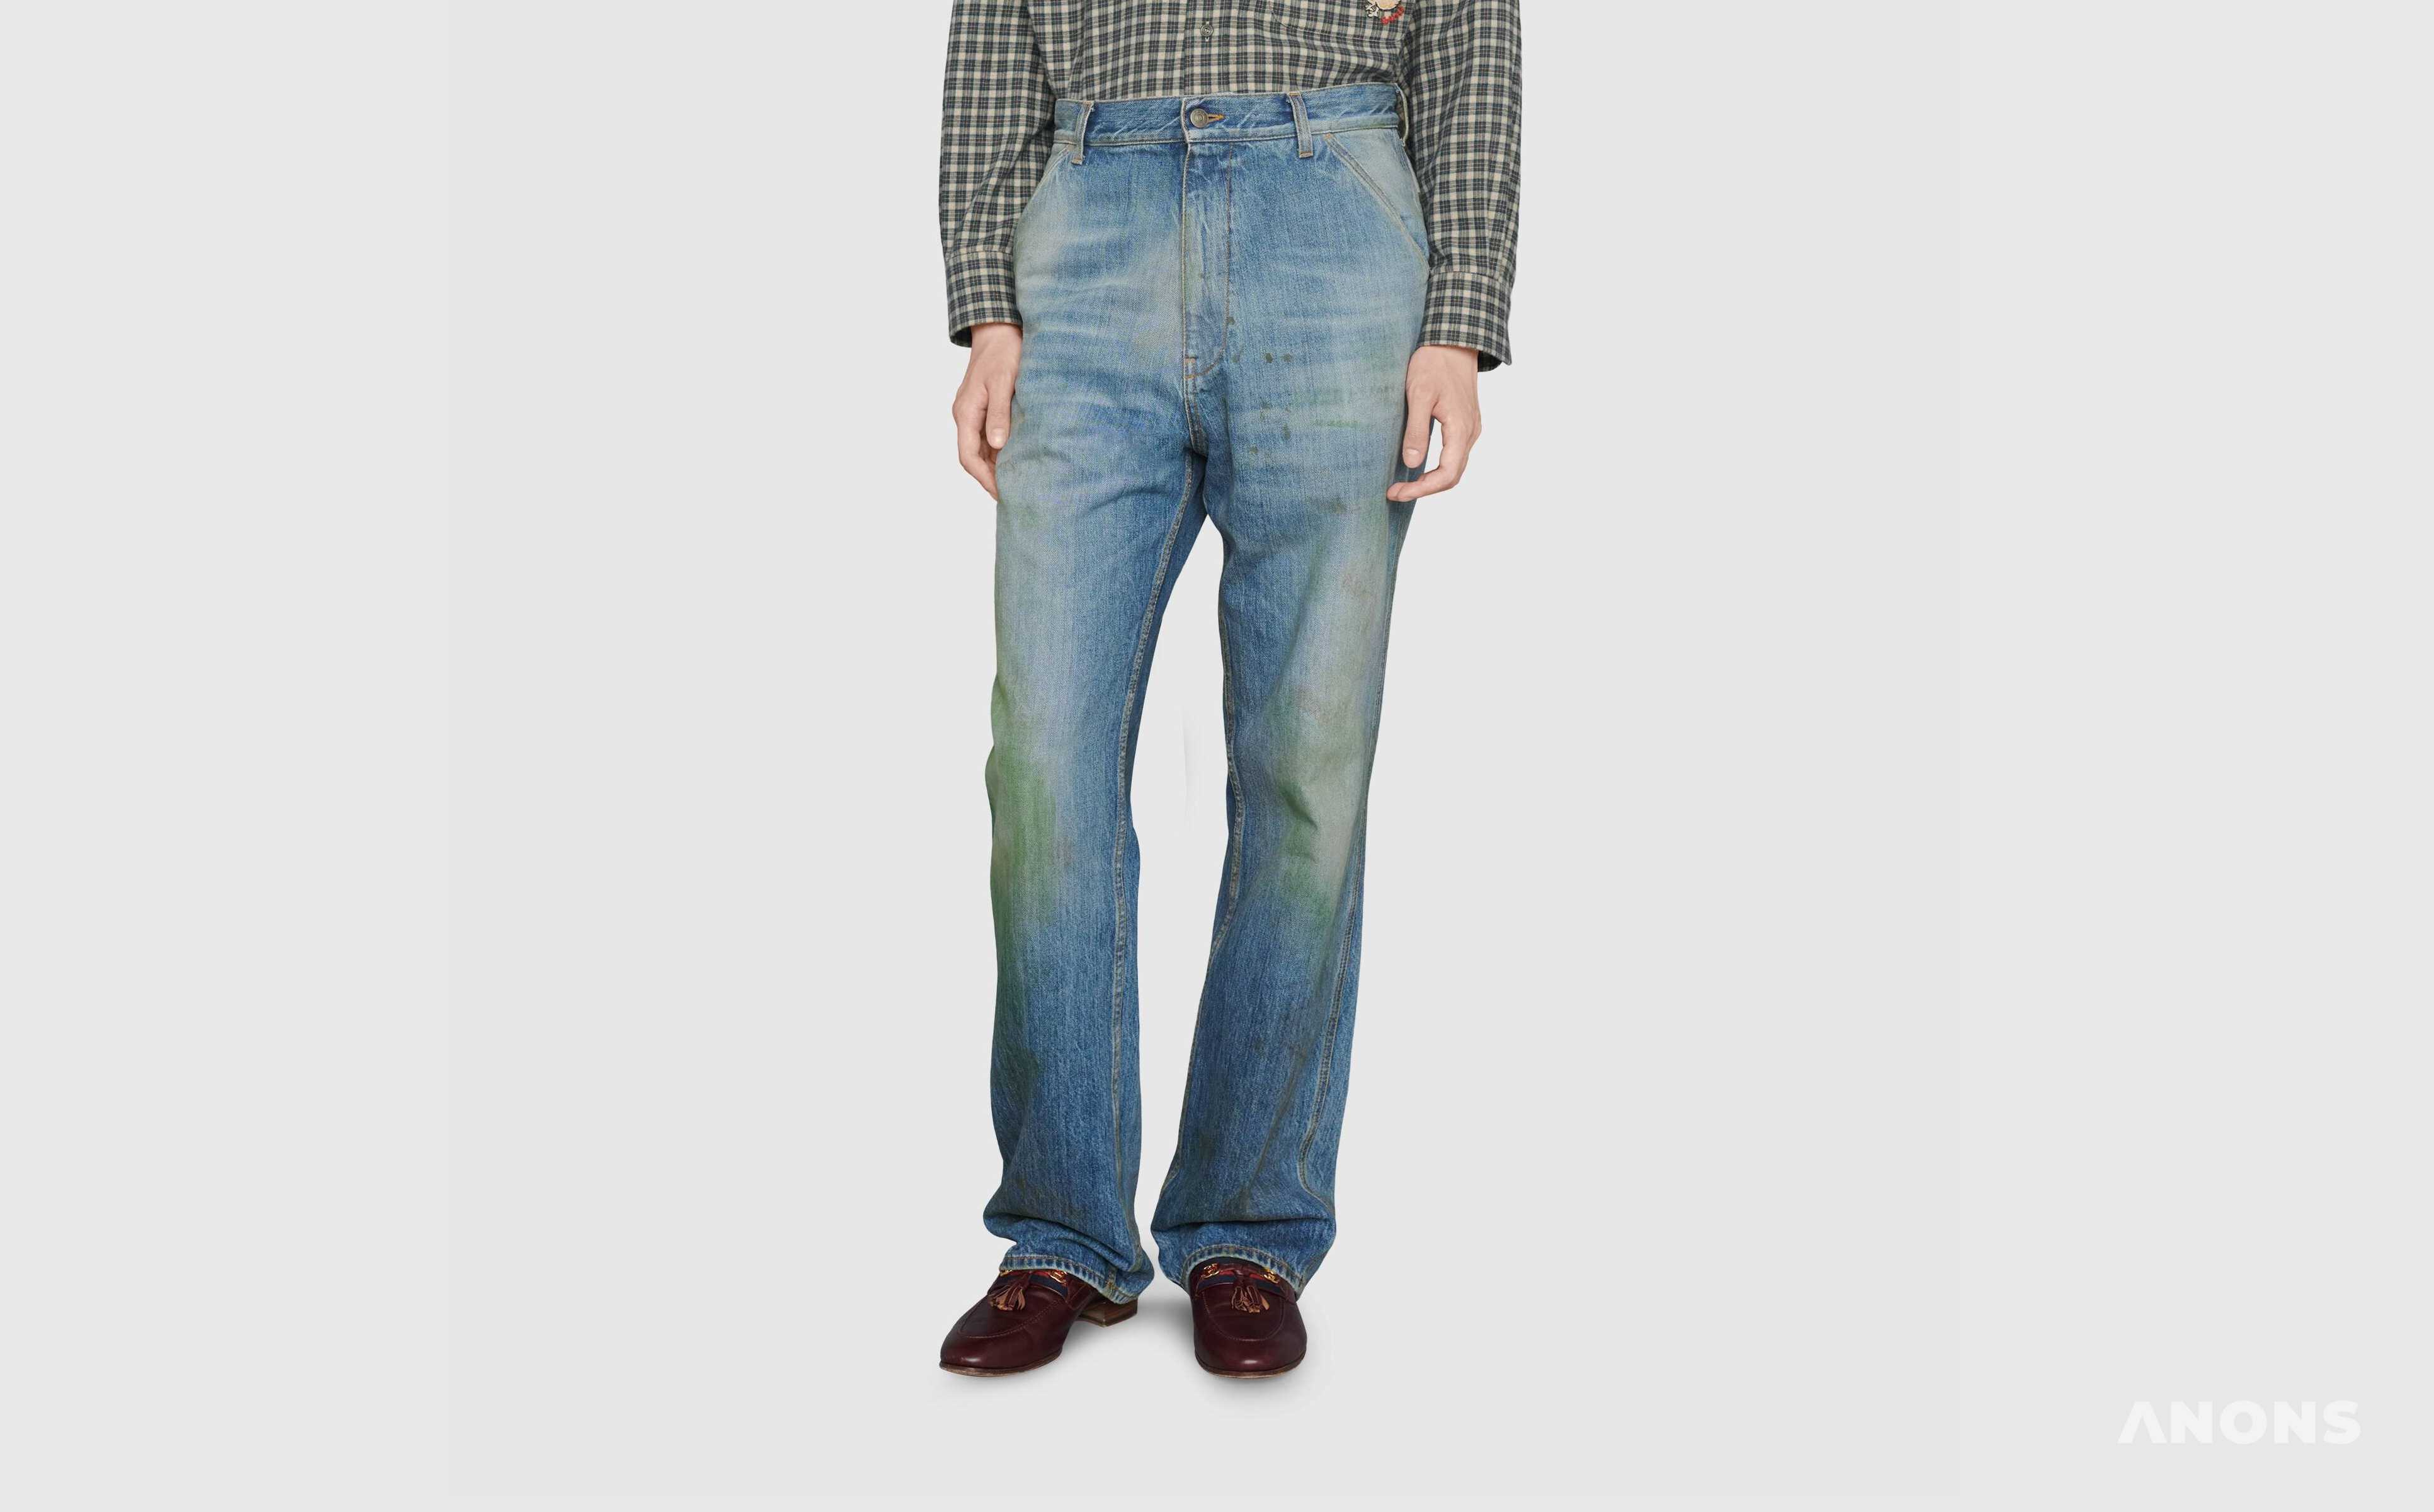 Gucci начал продавать «грязные» джинсы по цене 700 долларов